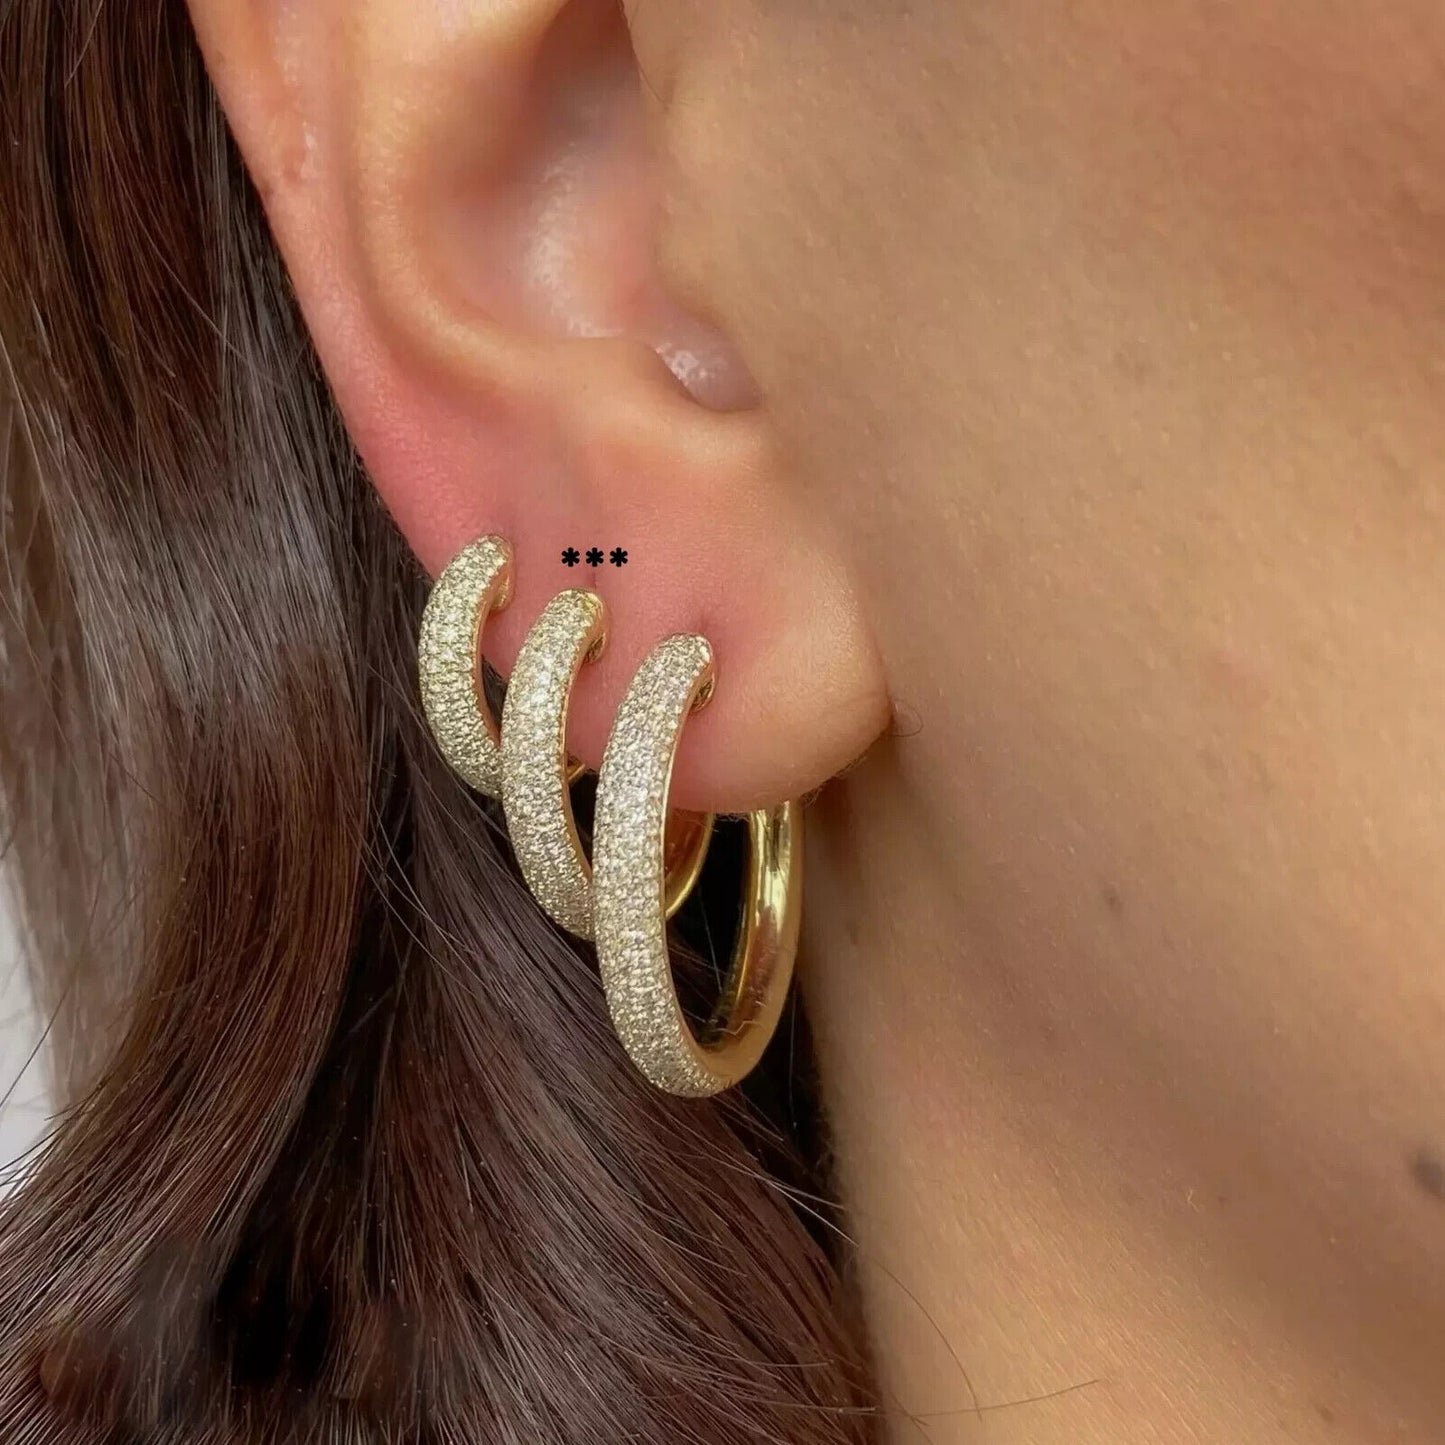 14K Gold Diamond Pave Hoop Earrings